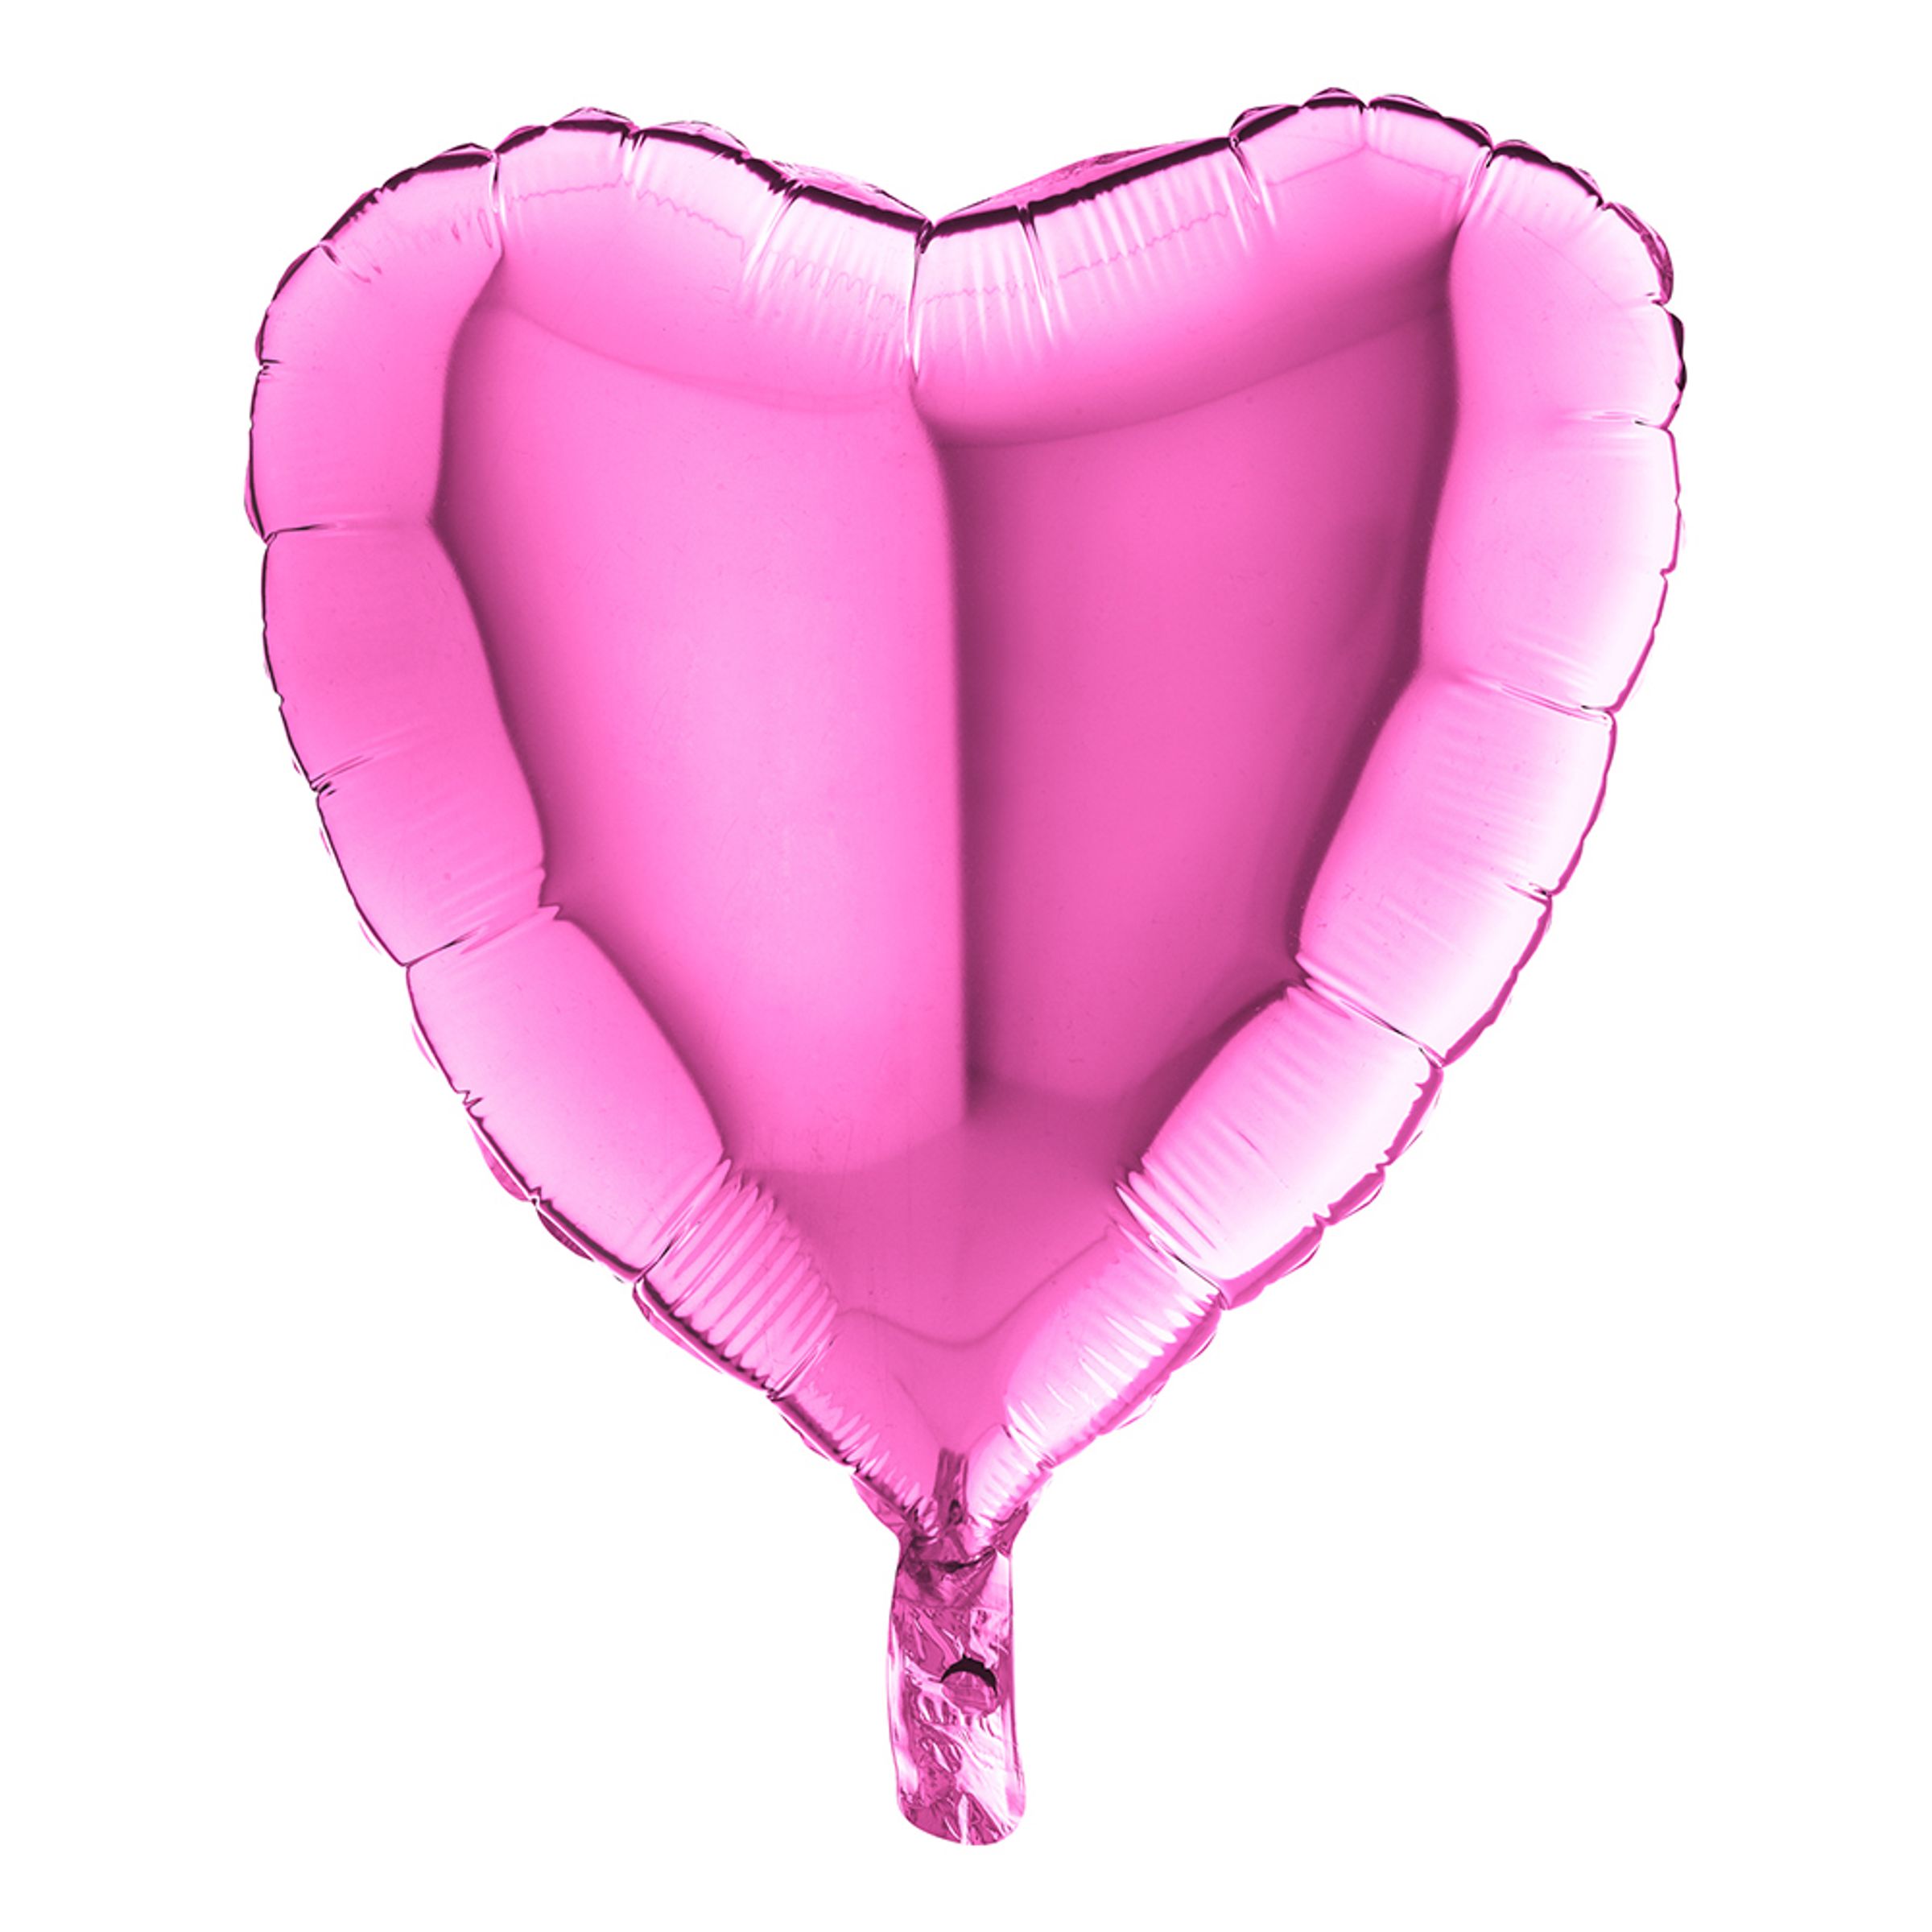 Folieballong Hjärta Metallic Rosa